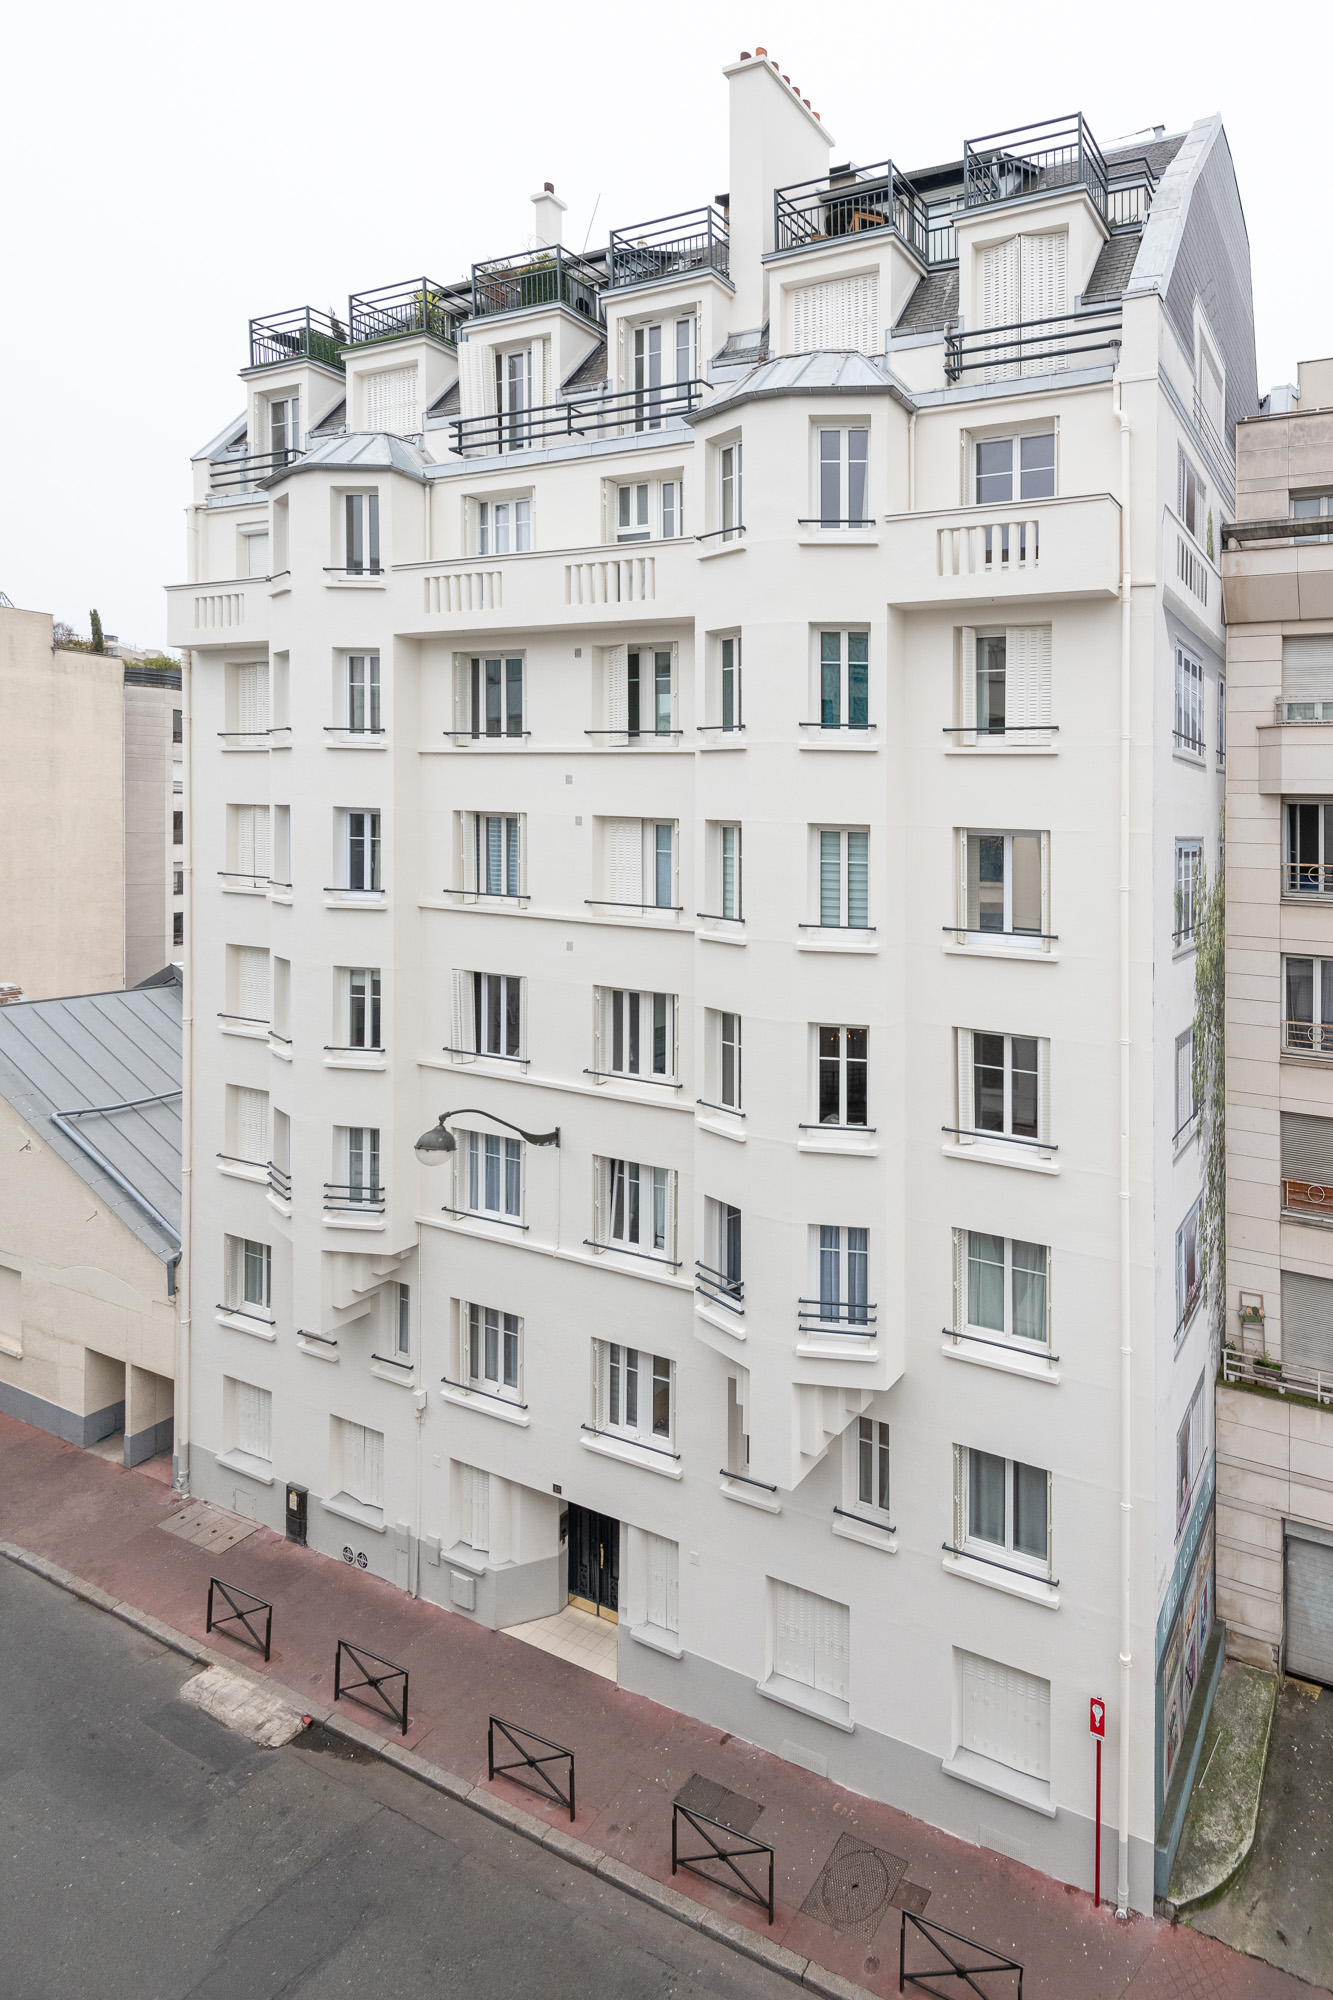 Studio La Boetie Architecte
Ravalement de façade
83 Rue Rivay, Levallois-Perret
© Christophe Caudroy